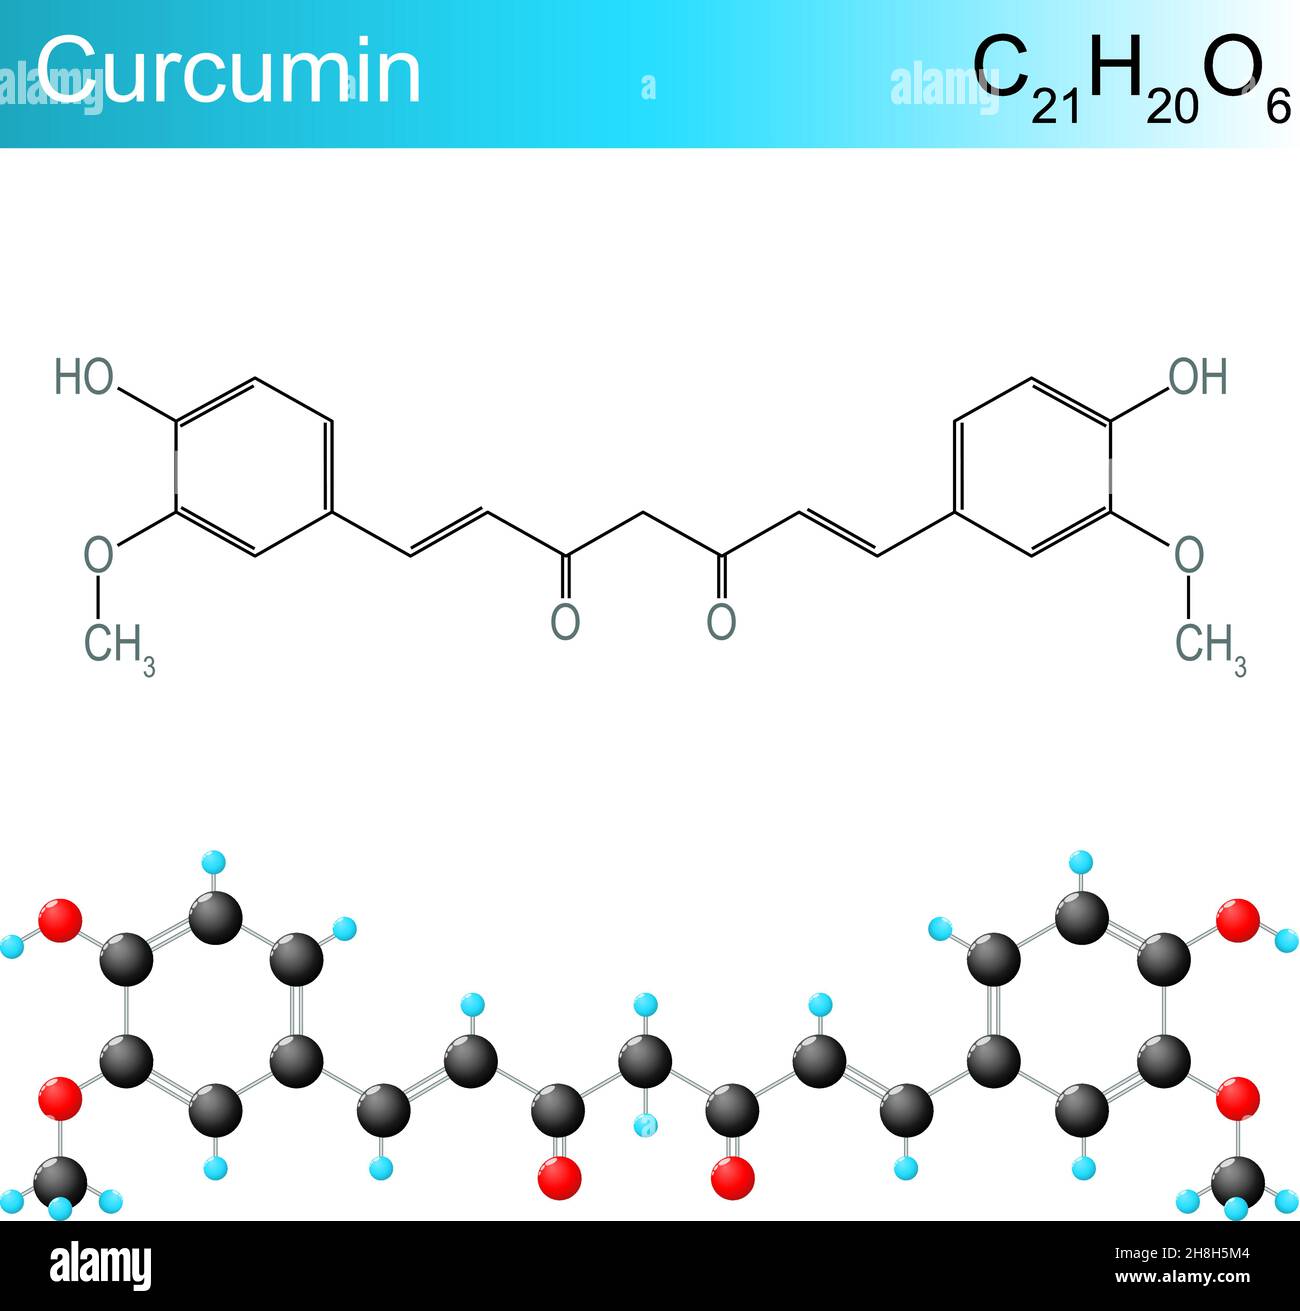 Formula molecolare della curcumina. Formula chimica strutturale e modello di una sostanza chimica prodotta da piante della specie Curcuma longa. Illustrazione vettoriale Illustrazione Vettoriale